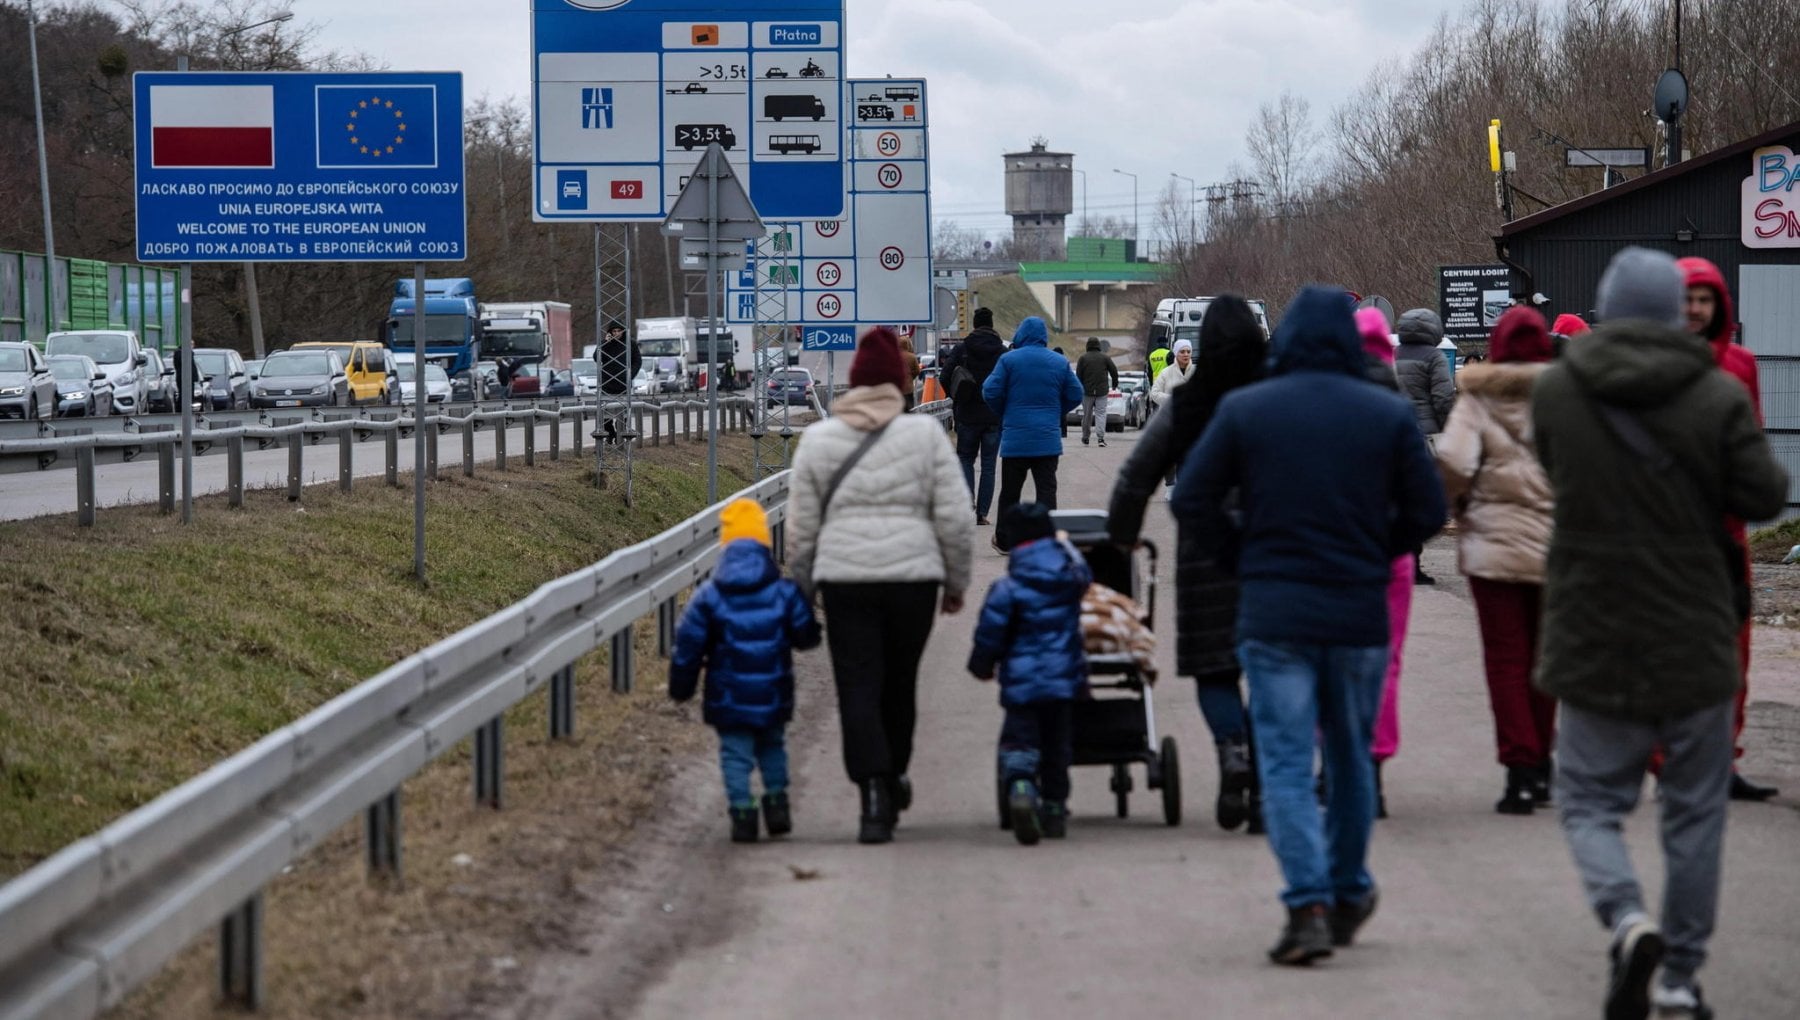 L’Ucraina cerca di riprendersi i cittadini rifugiatisi in Europa per evitare la mobilitazione